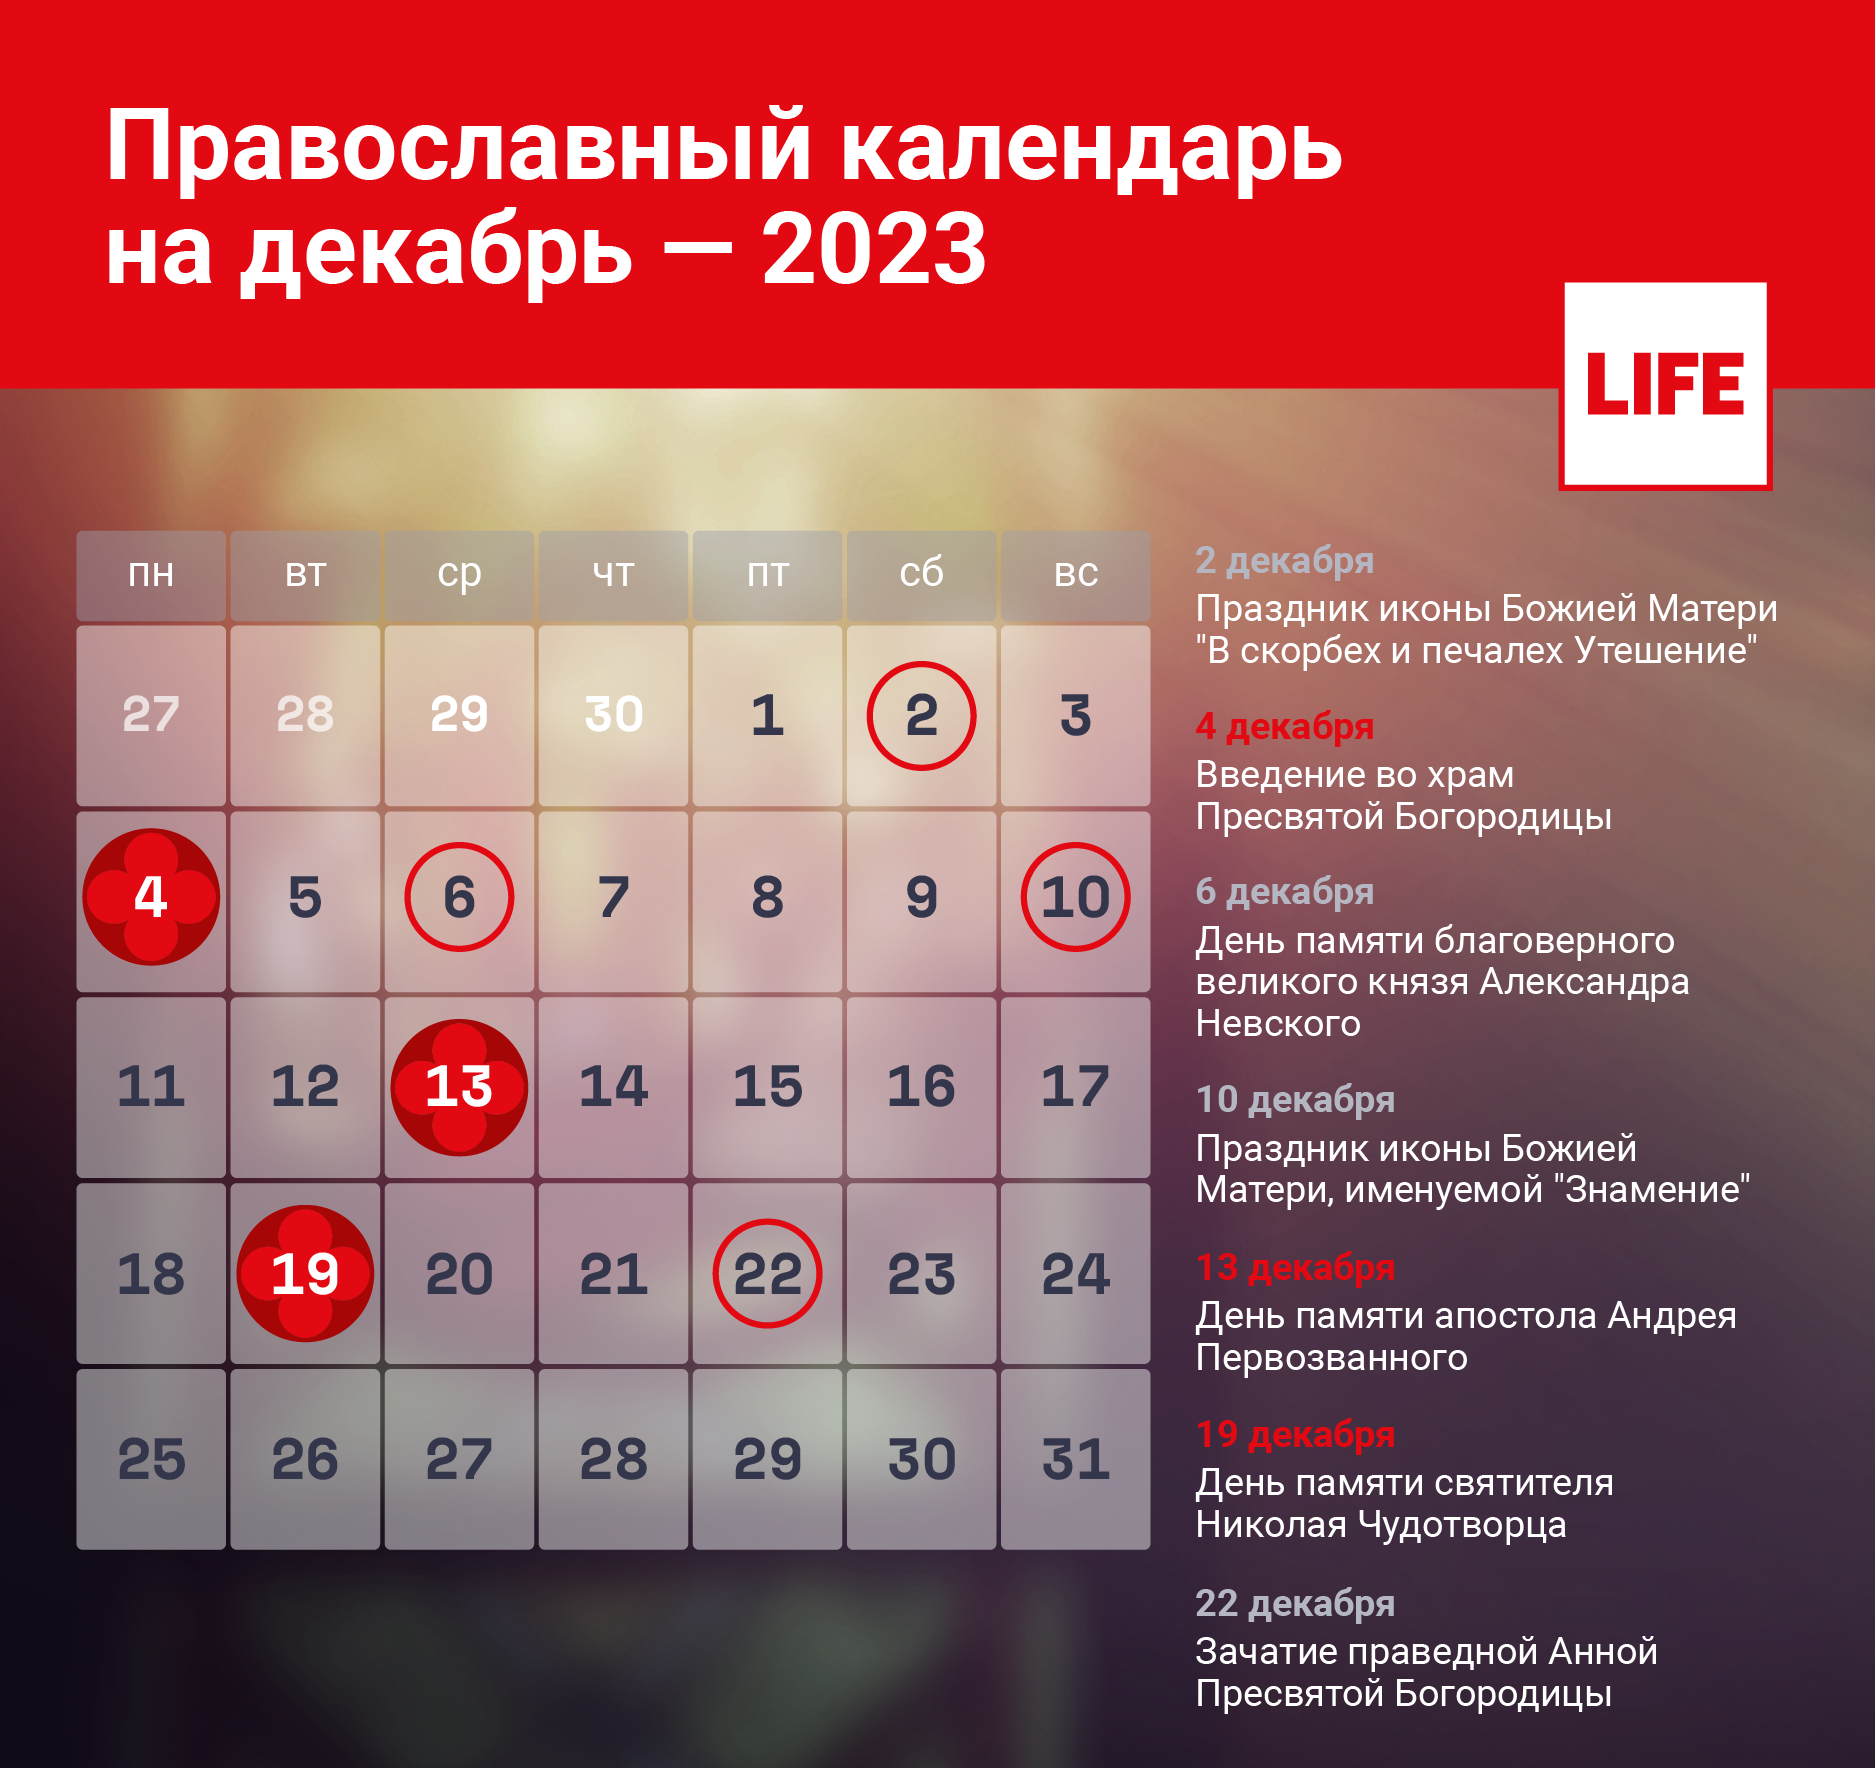 Календарь православных праздников на декабрь. Инфографика © LIFE 